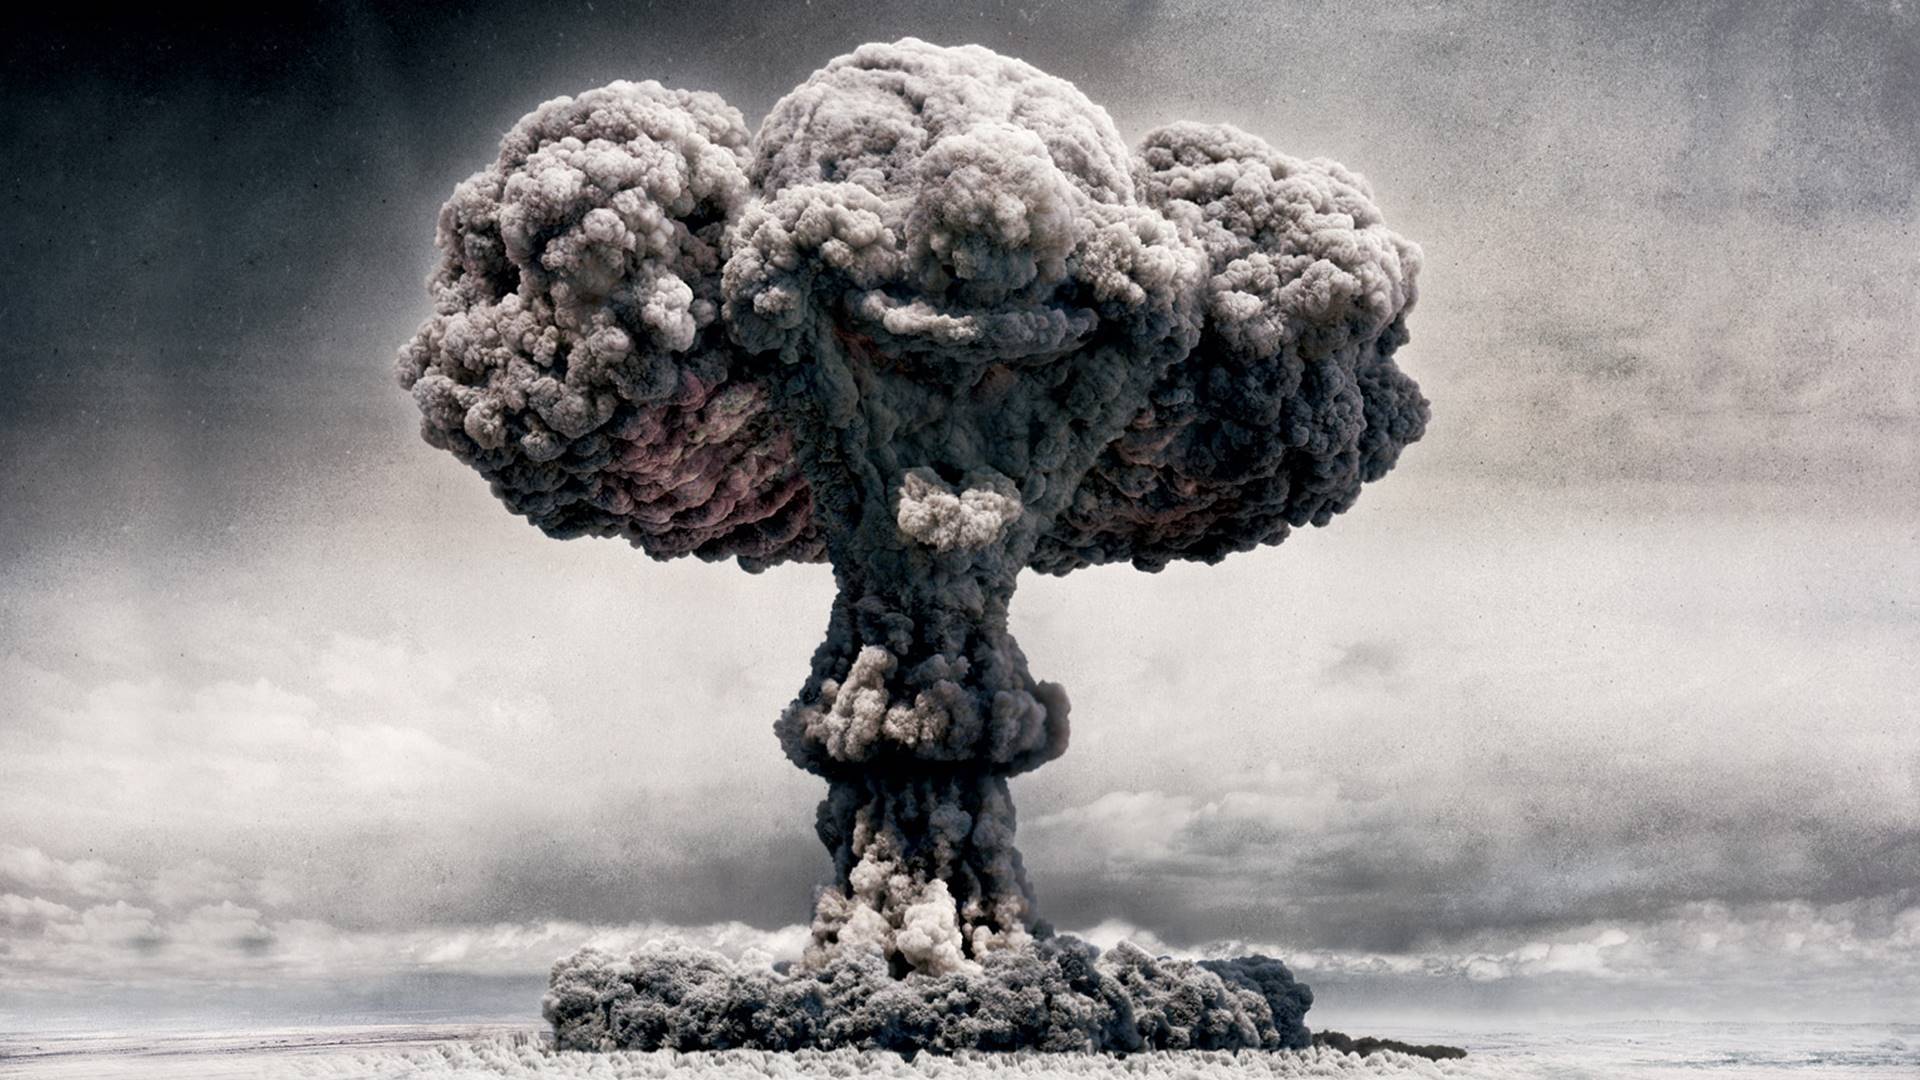 Wallpaper Cloud of atomic bomb blast